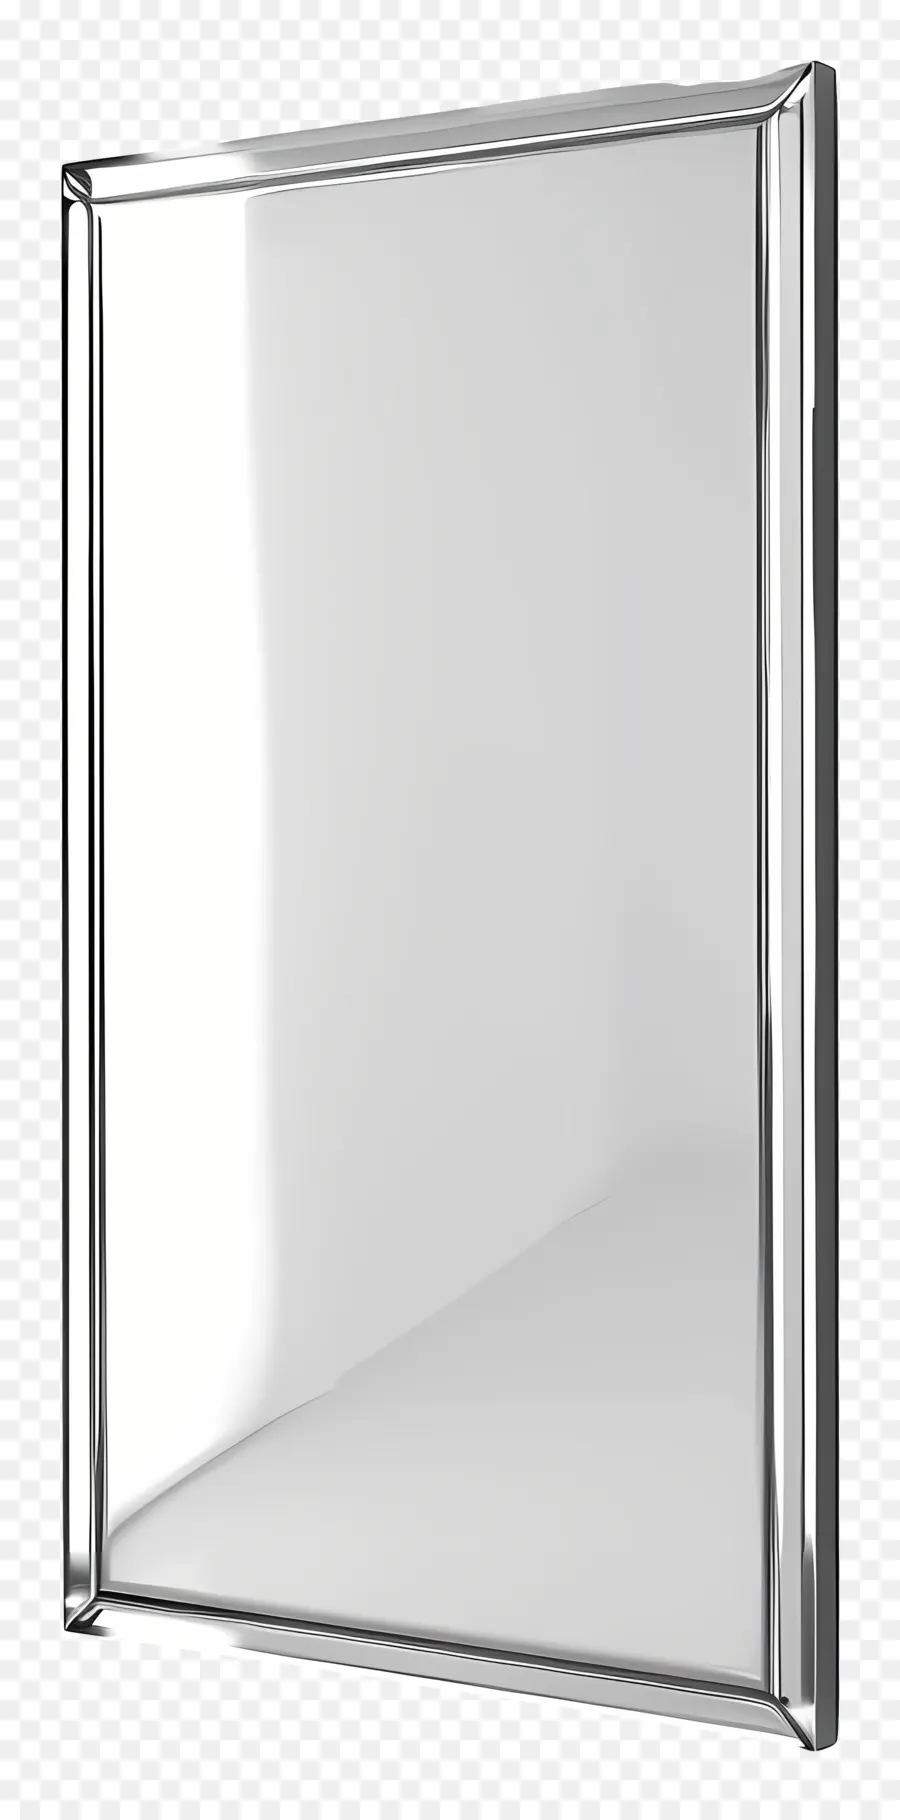 trắng biên giới - Gương kim loại đóng khung trong hình ảnh phản chiếu màu trắng